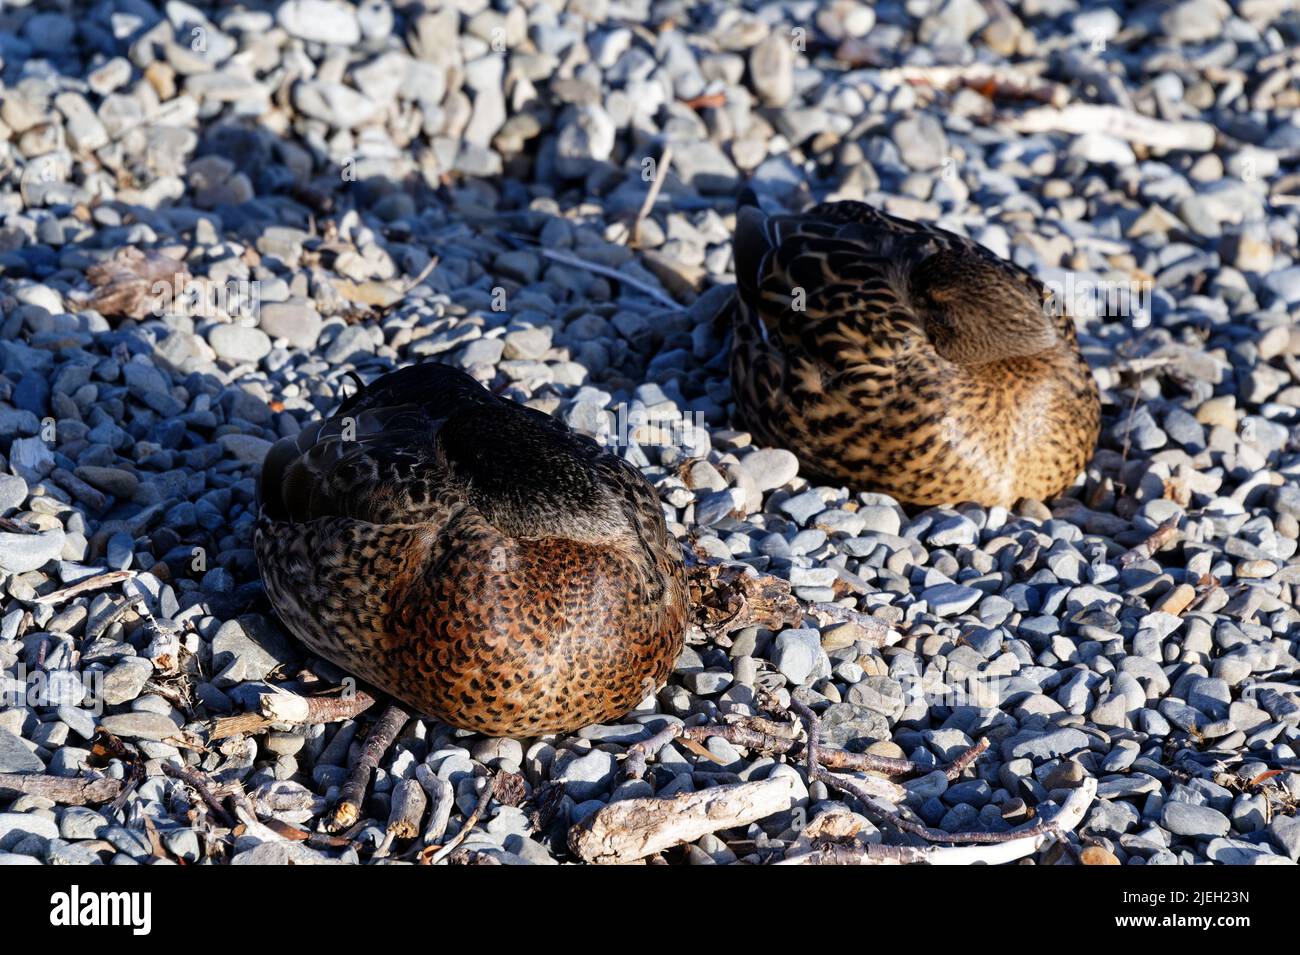 Los patos están durmiendo en una playa de piedras, tienen sus cabezas escondidas debajo de sus alas. Sus plumas de pecho son resaltadas por la luz del sol. Foto de stock